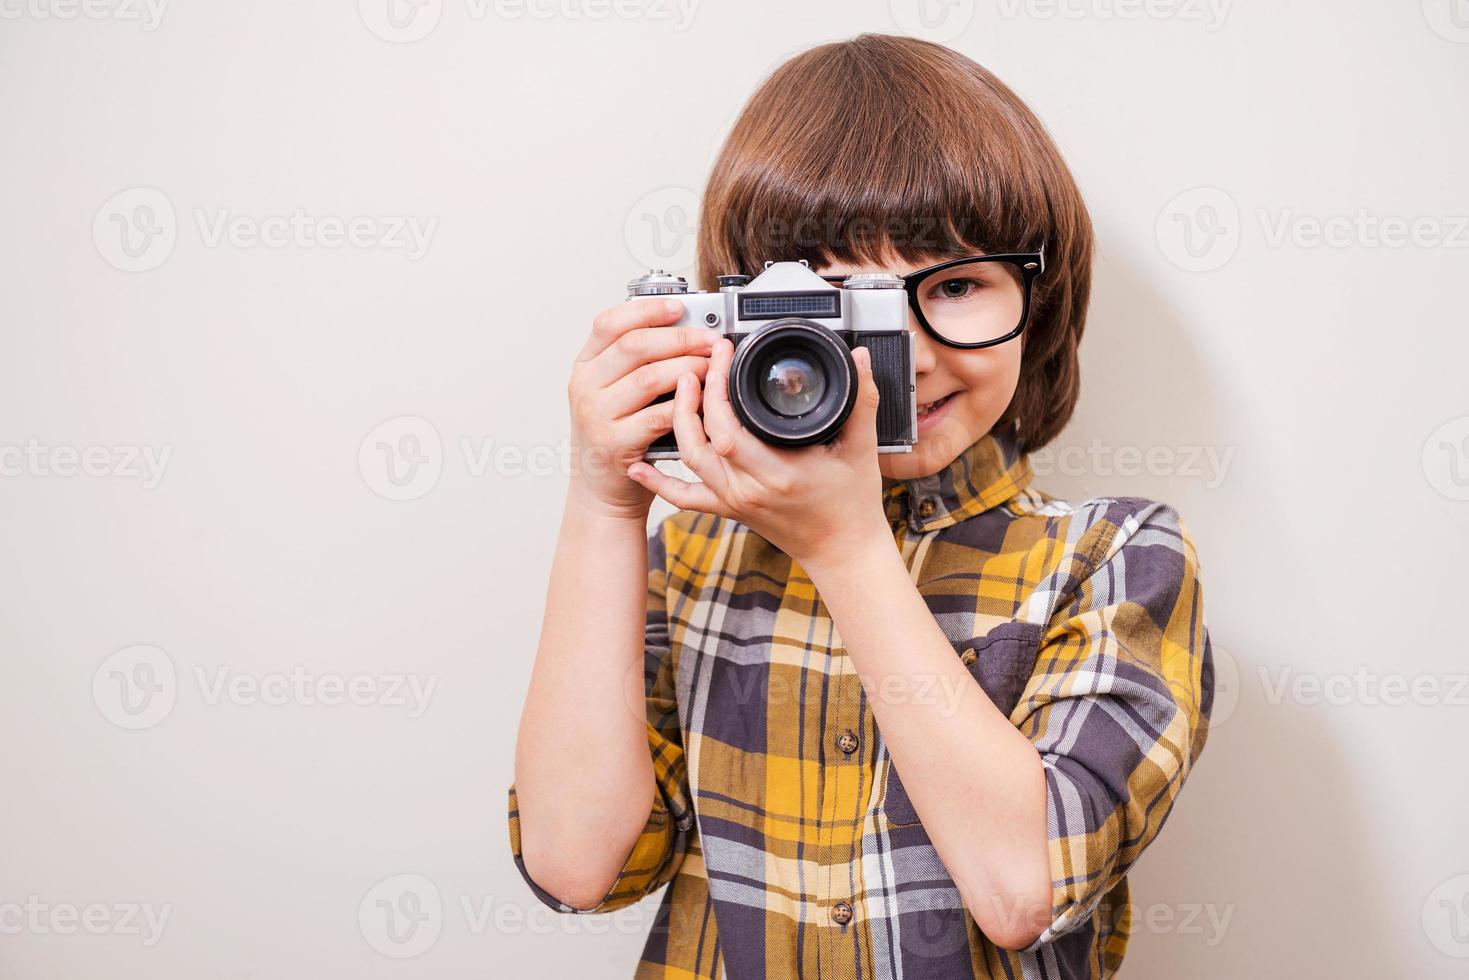 le gusta disparar. niño pequeño con anteojos sosteniendo la cámara y sonriendo mientras está de pie contra el fondo gris foto